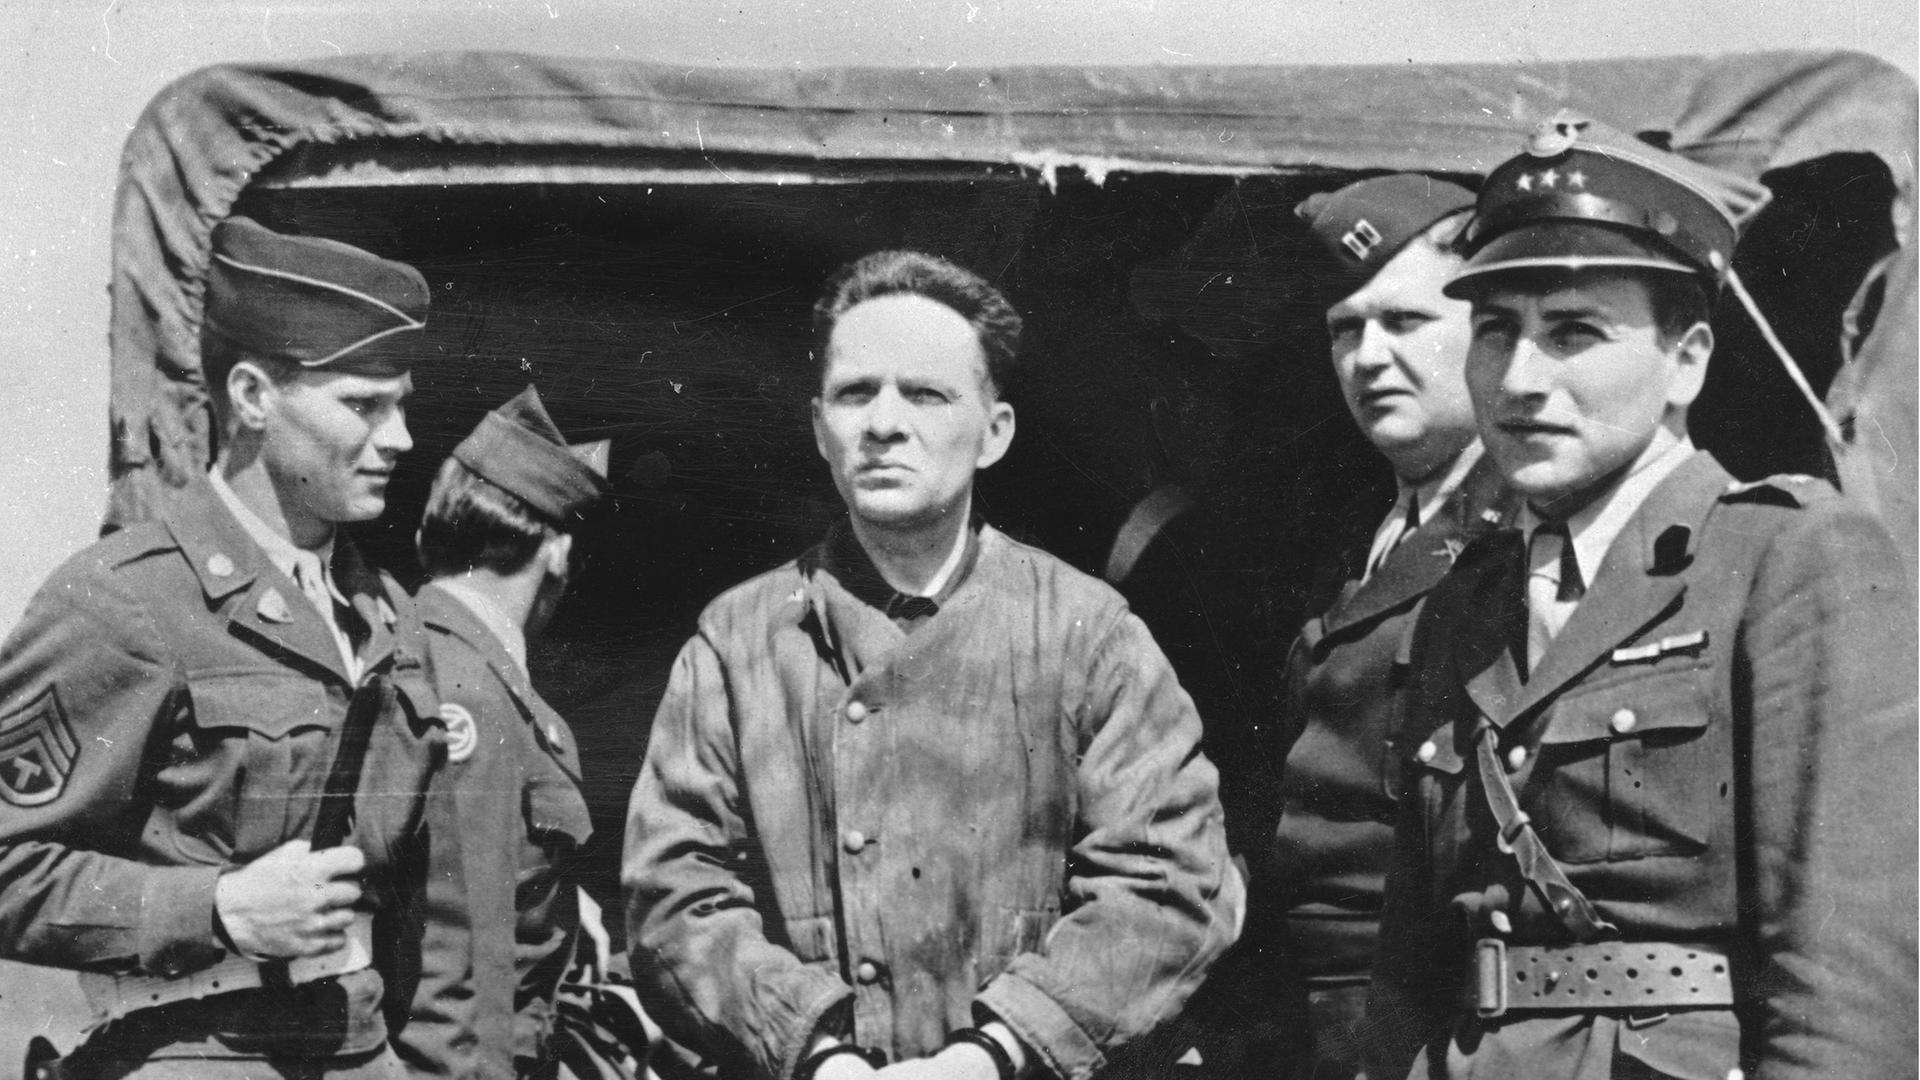 Der Kommandant des KZ Auschwitz Rudolf Höß 1946 auf dem Nürnberger Flugplatz auf dem Weg zu den Nürnberger Prozessen. Vier alliierte Soldaten stehen auf dem Schwarzweißbild um ihn herum und bewachen ihn.